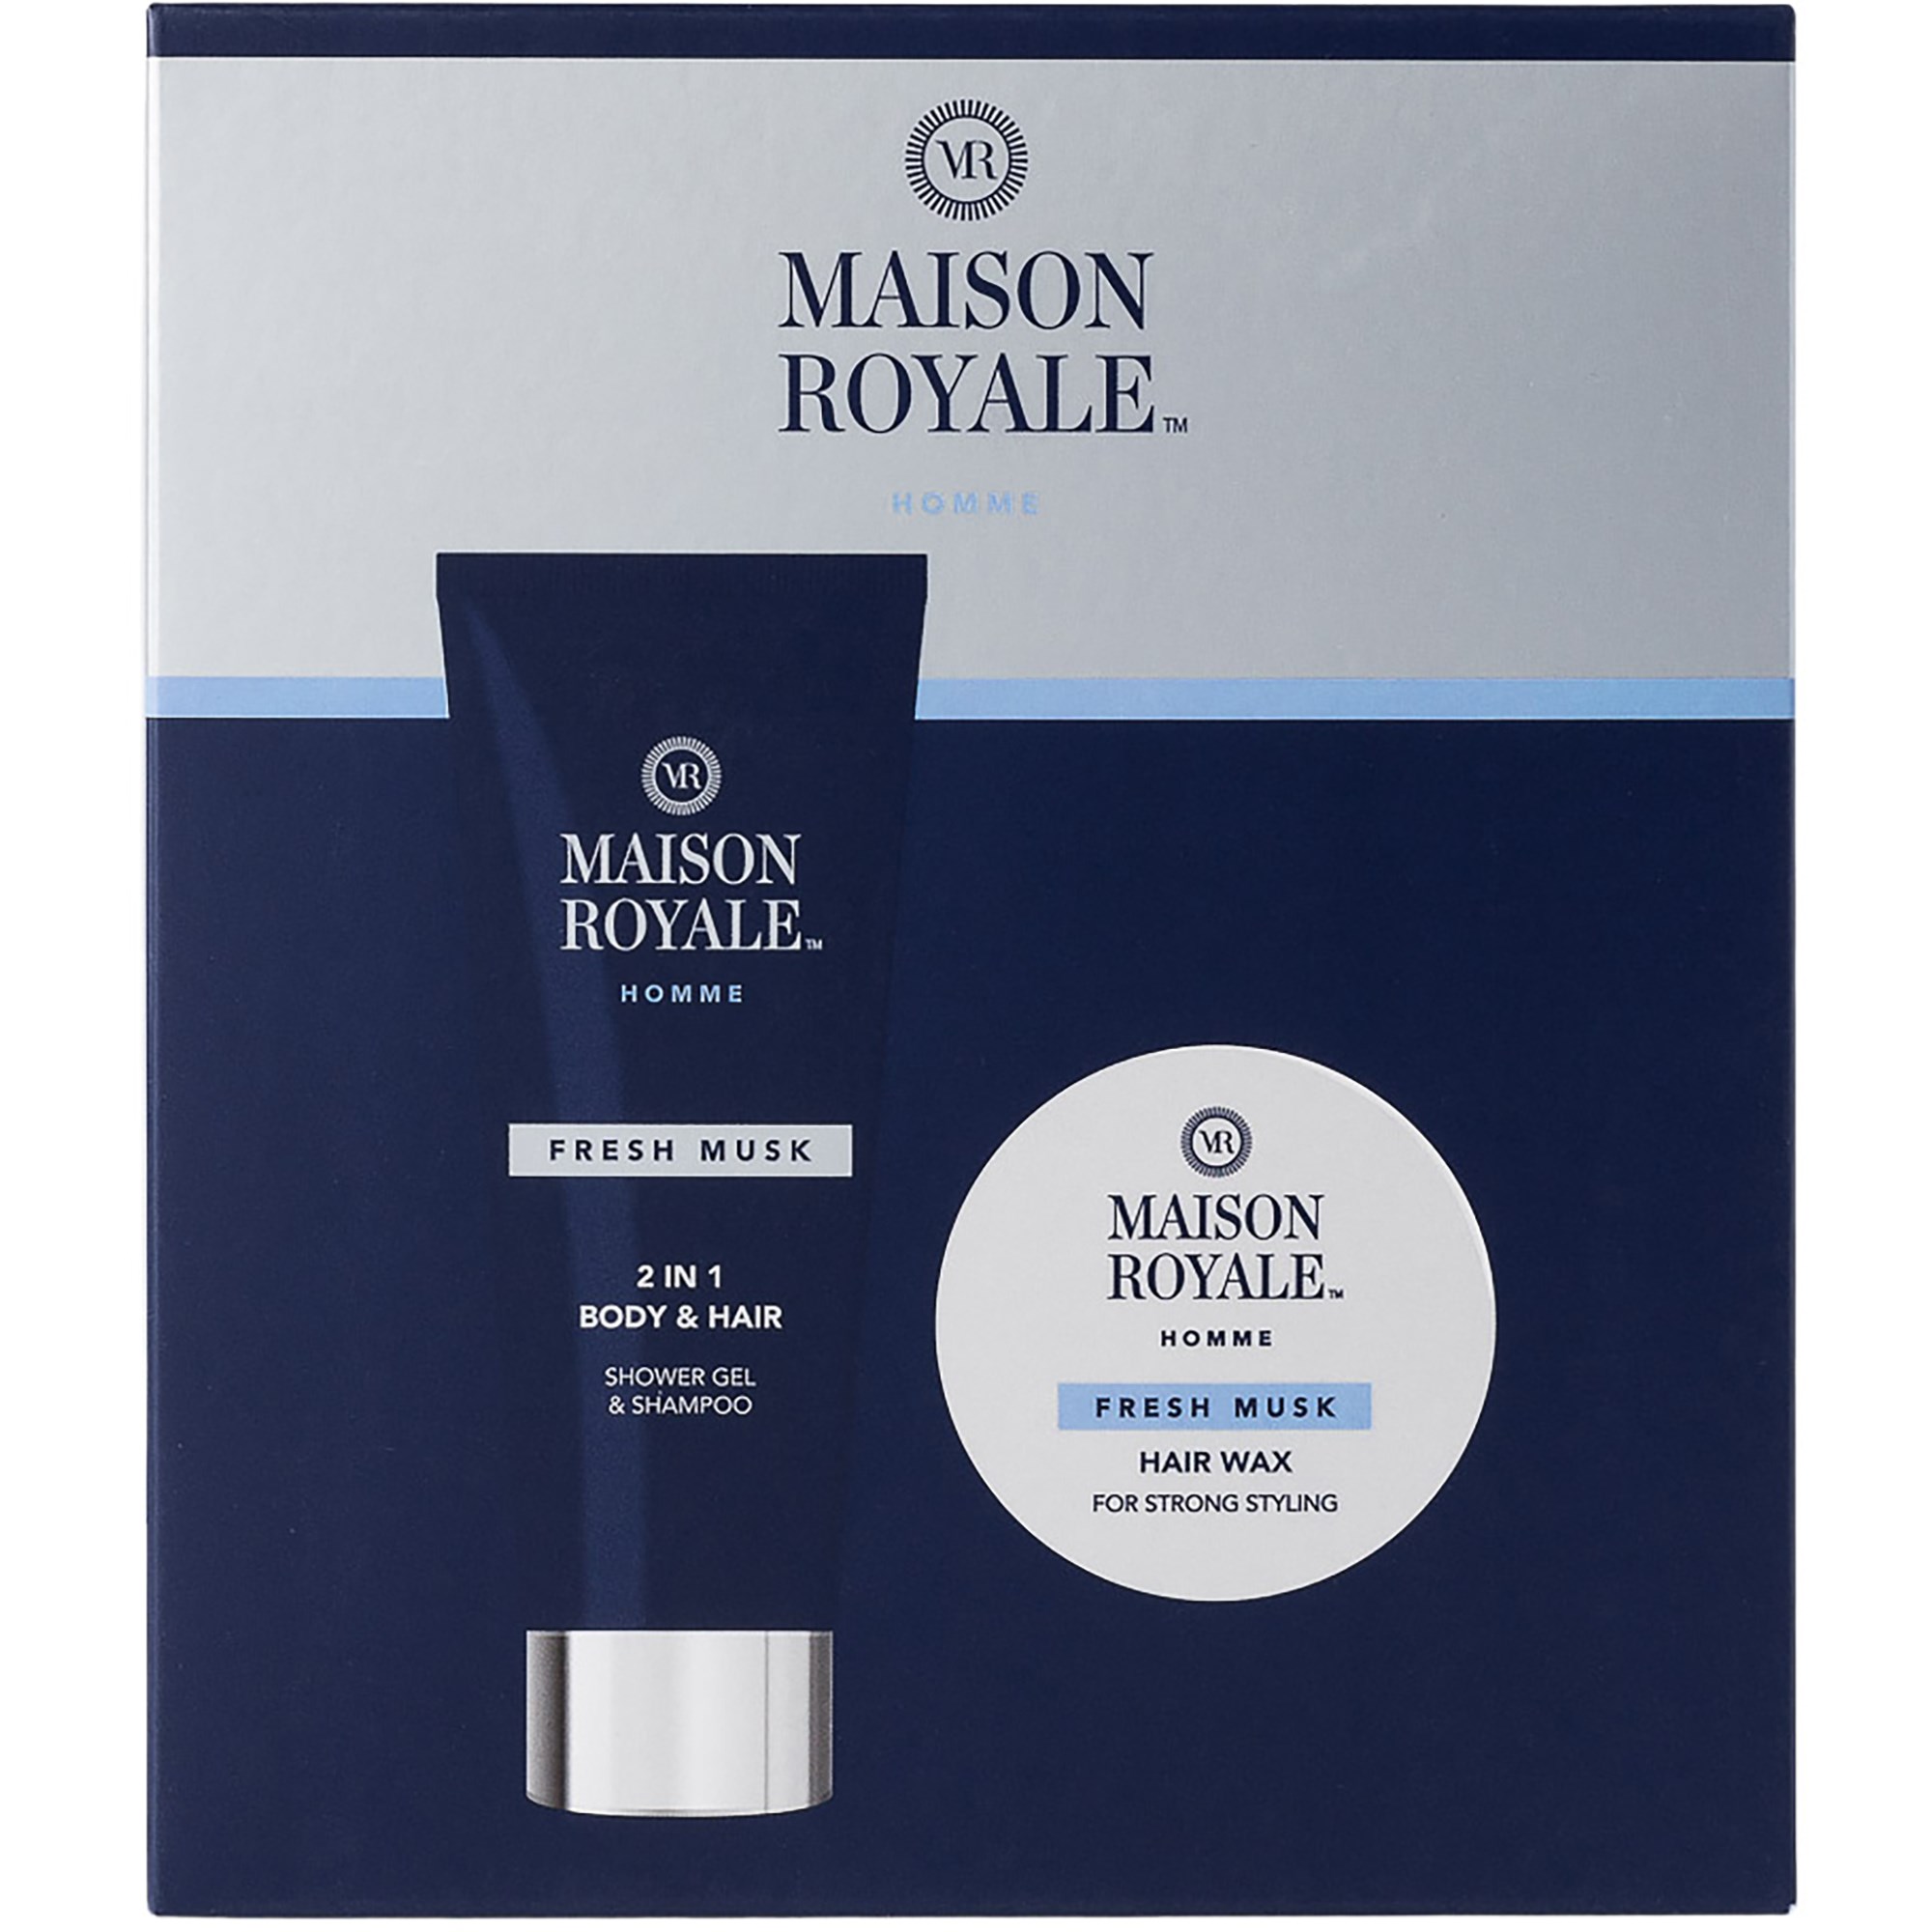 Bilde av No Brand Maison Royale Body & Hair Set